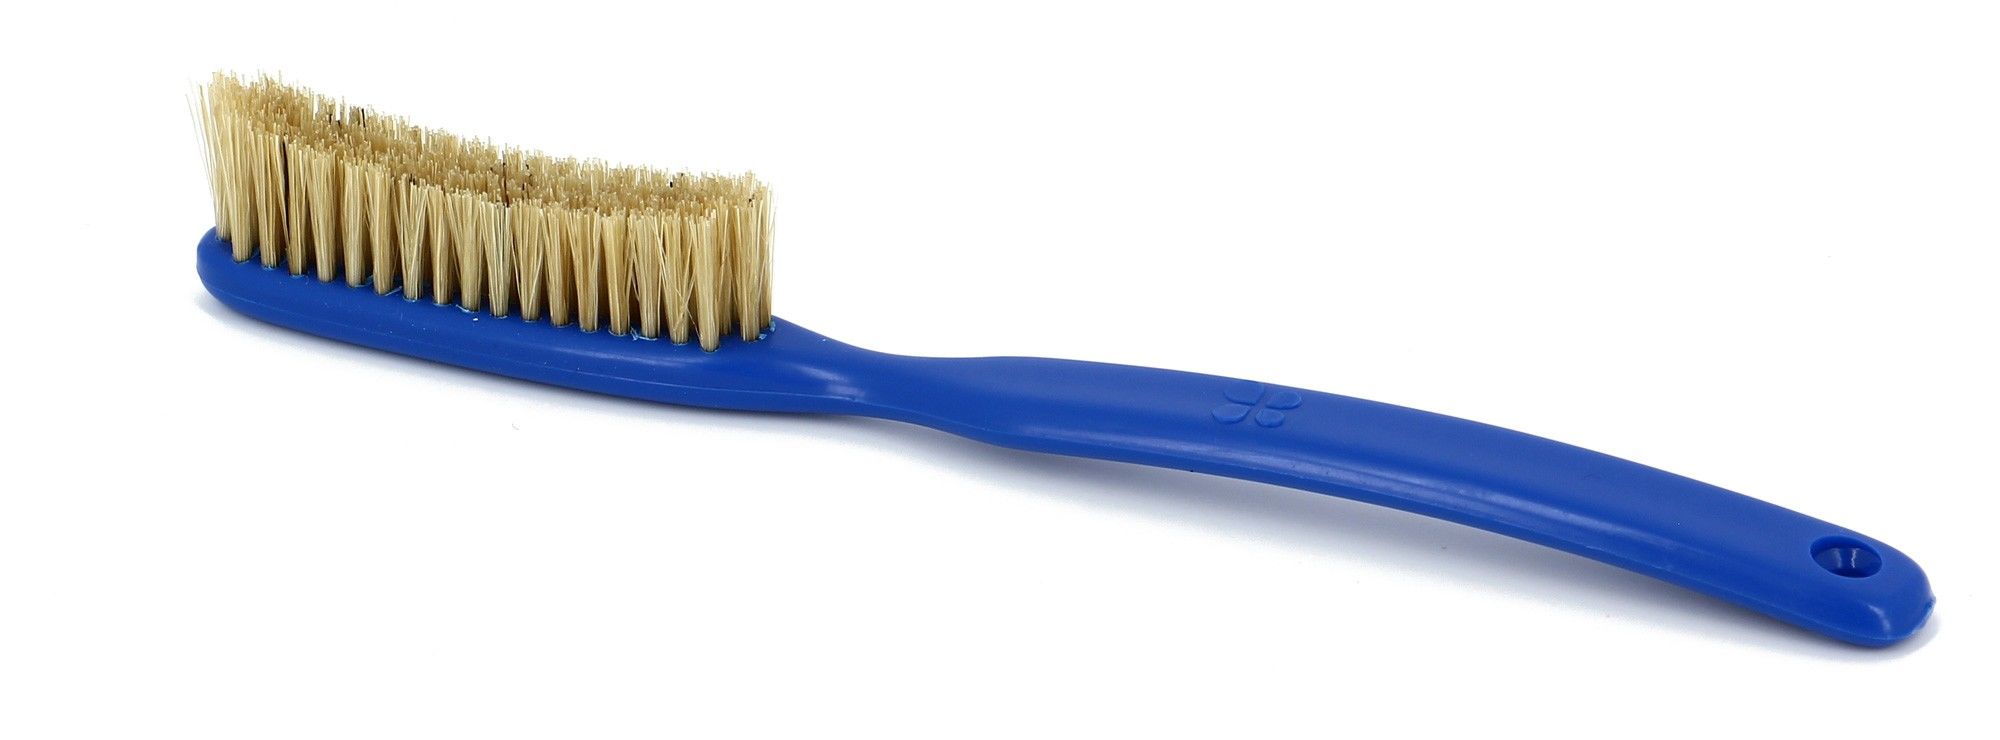 Lapis Brush Blau | Größe One Size |  Kletterzubehör